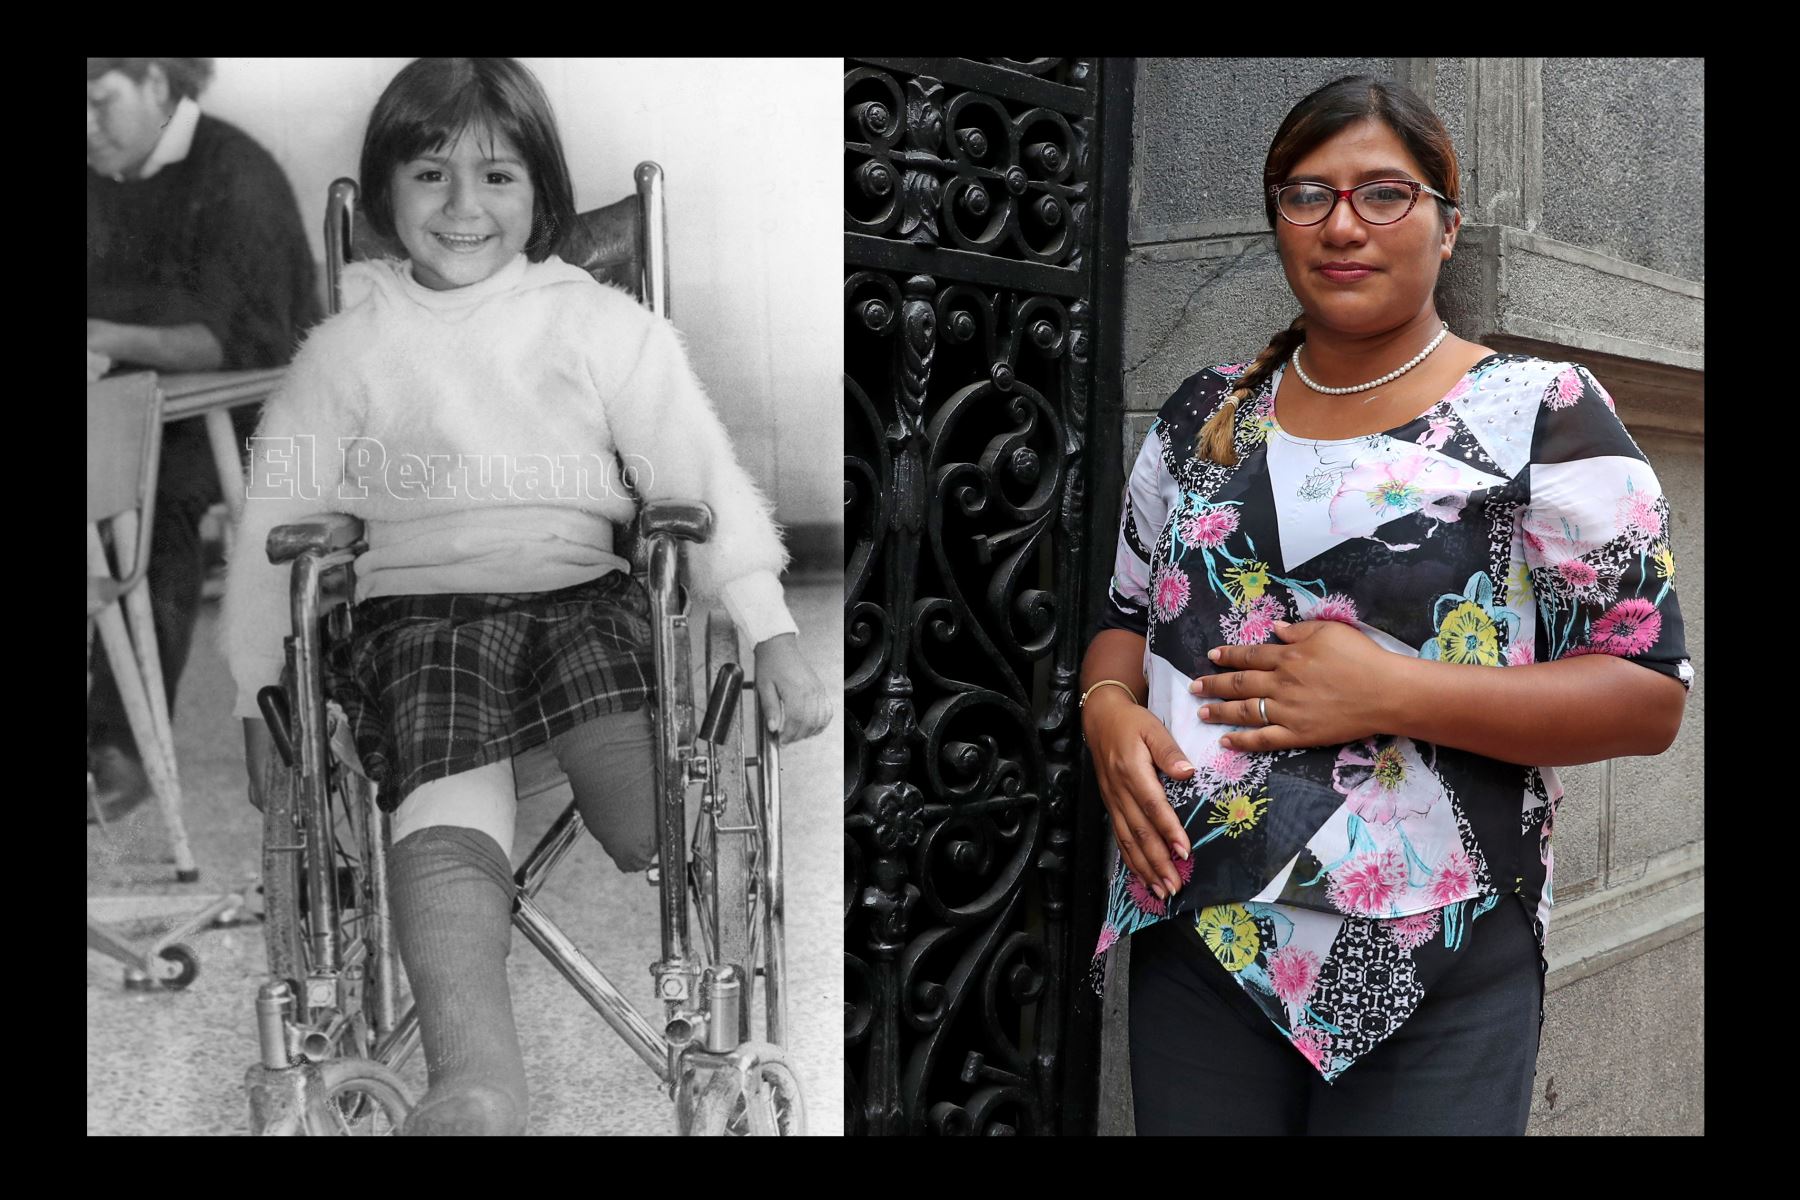 Día de la Mujer: El terrorismo nunca pudo mutilarle la vida a Vanessa Quiroga